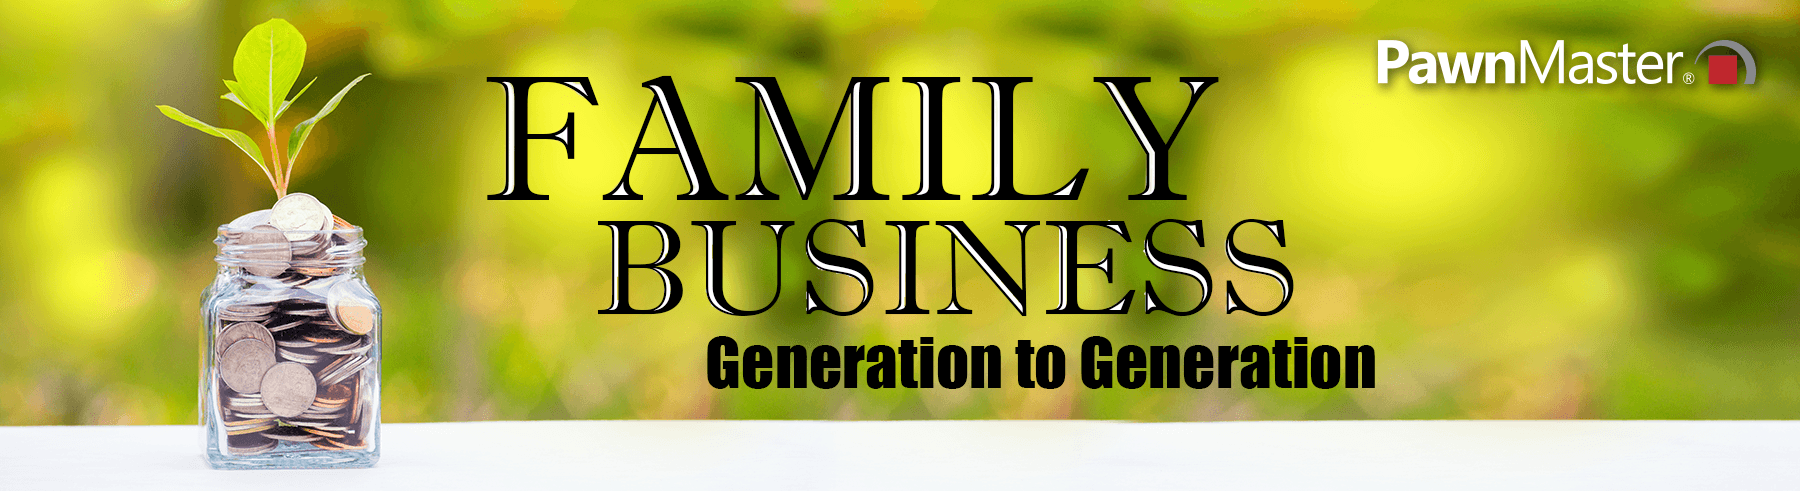 header-familybusiness